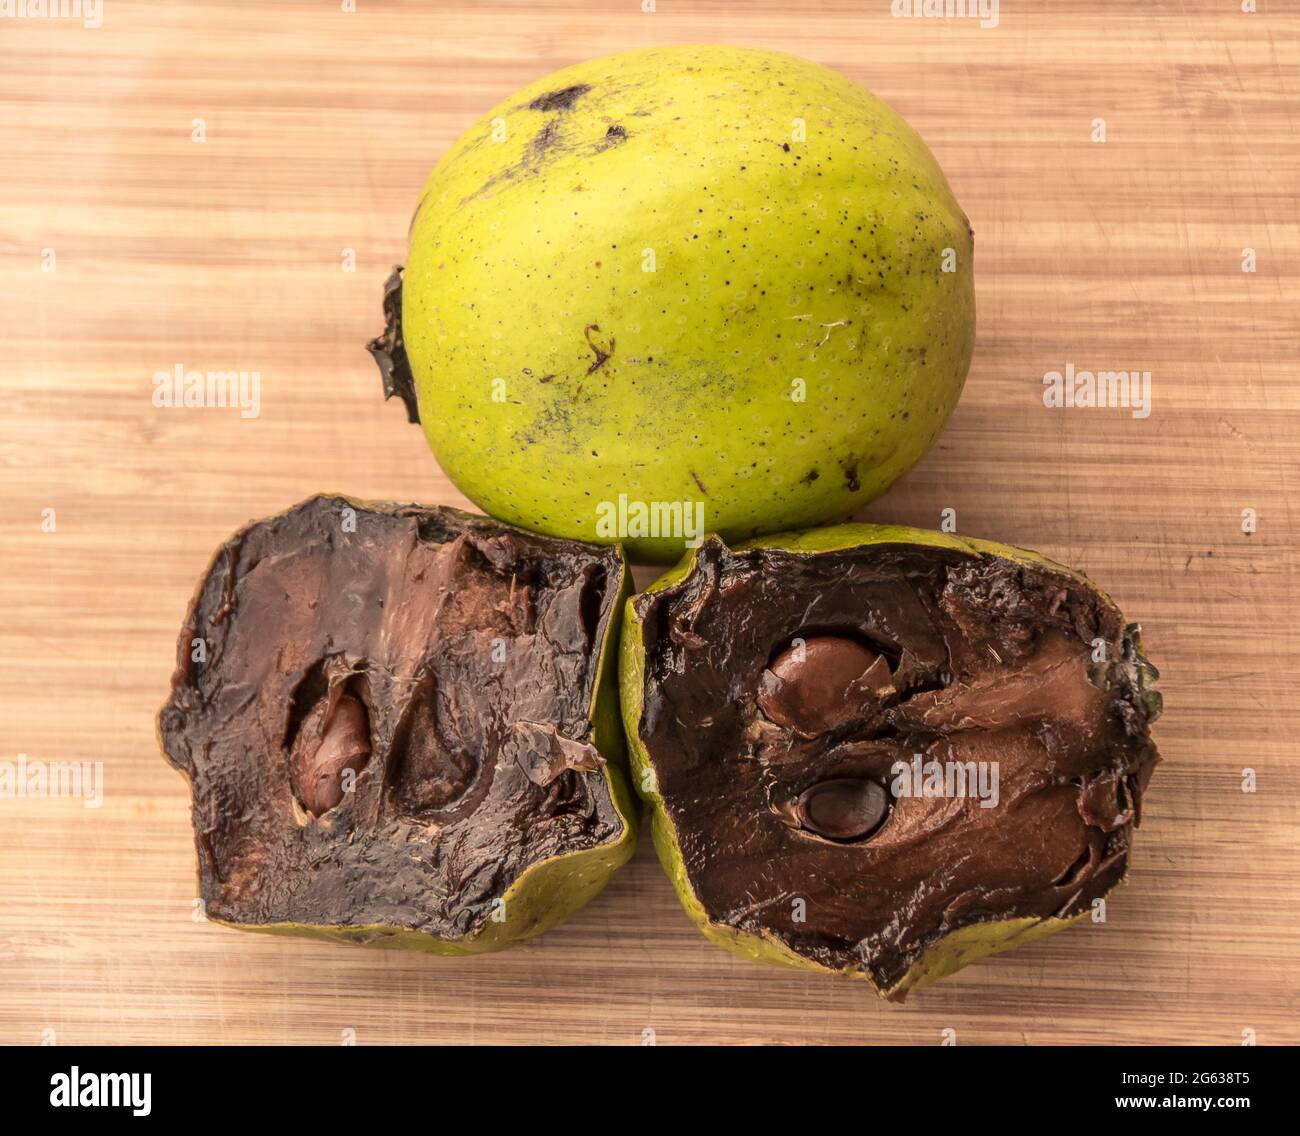 Pudding au chocolat mûr, sapote noir, Diospyros nigra. Peau vert clair avec chair douce et brune foncée. Cultivé en Australie, prêt à manger. Banque D'Images